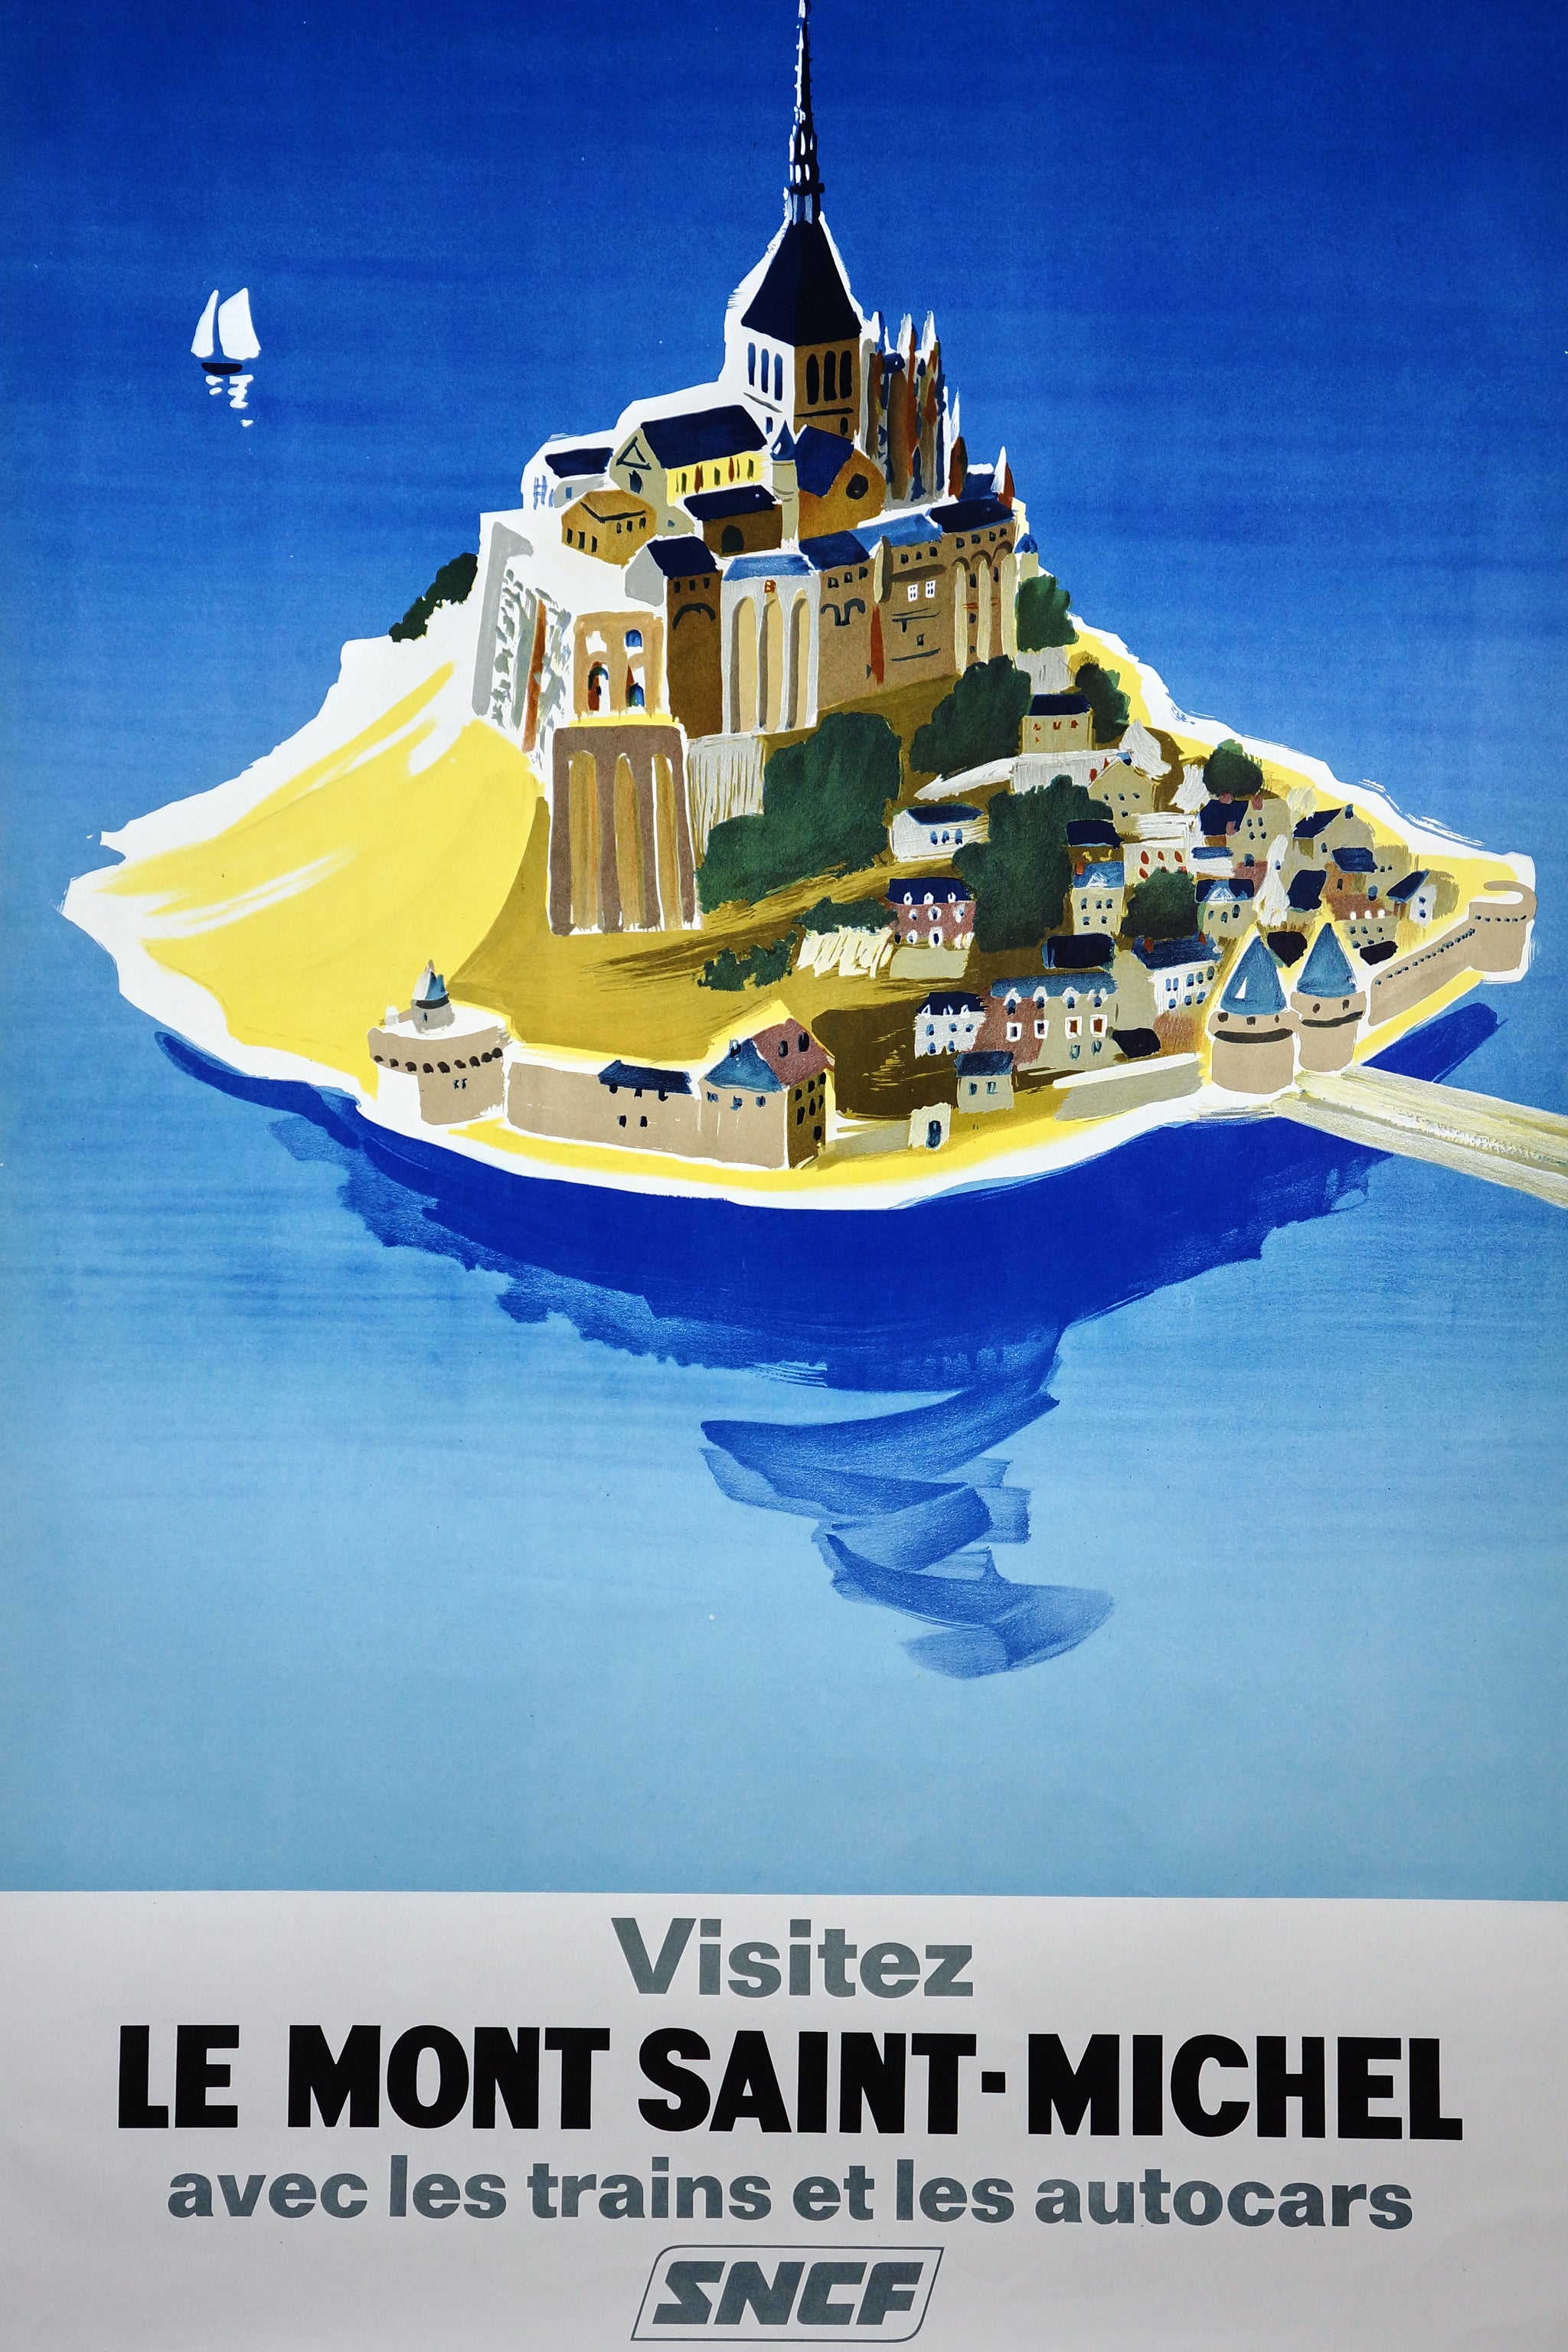 Authentic Vintage Poster | Visit Mont Saint-Michel by Villemot